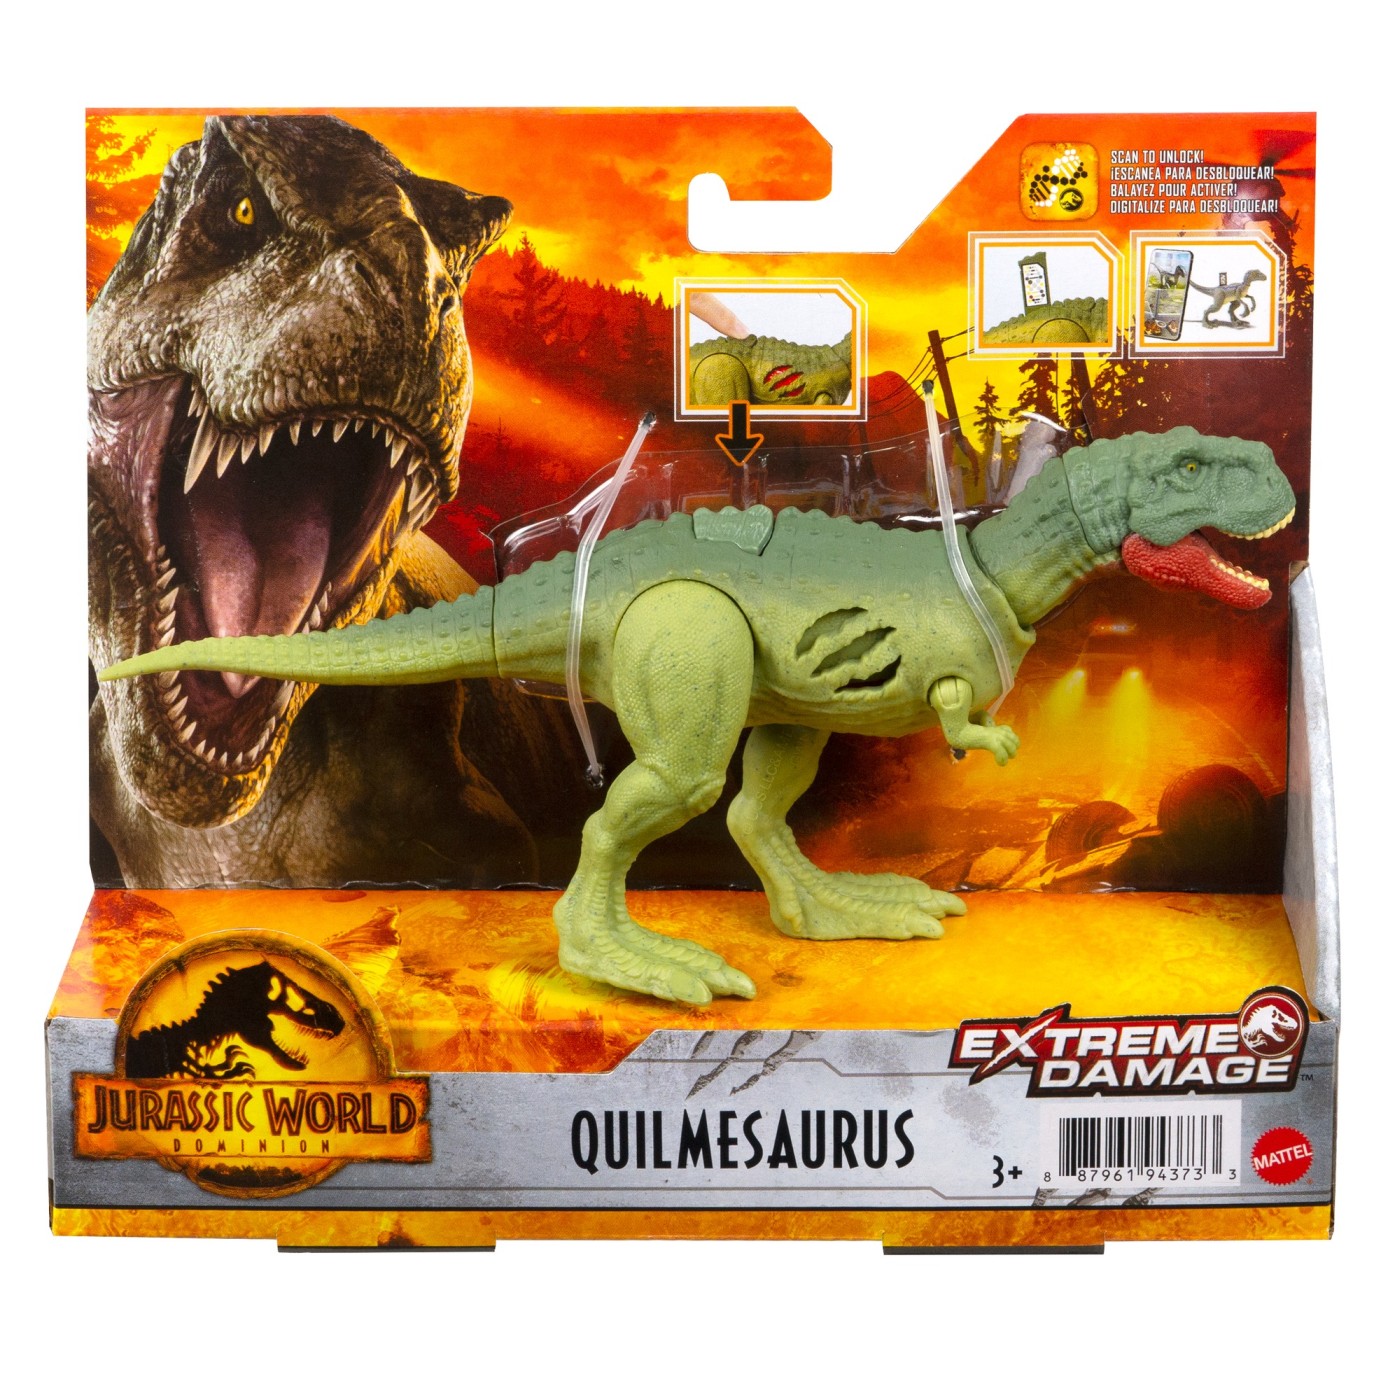 Figurina - Jurassic World Dominion - Extreme Damage: Quilmesaurus | Mattel